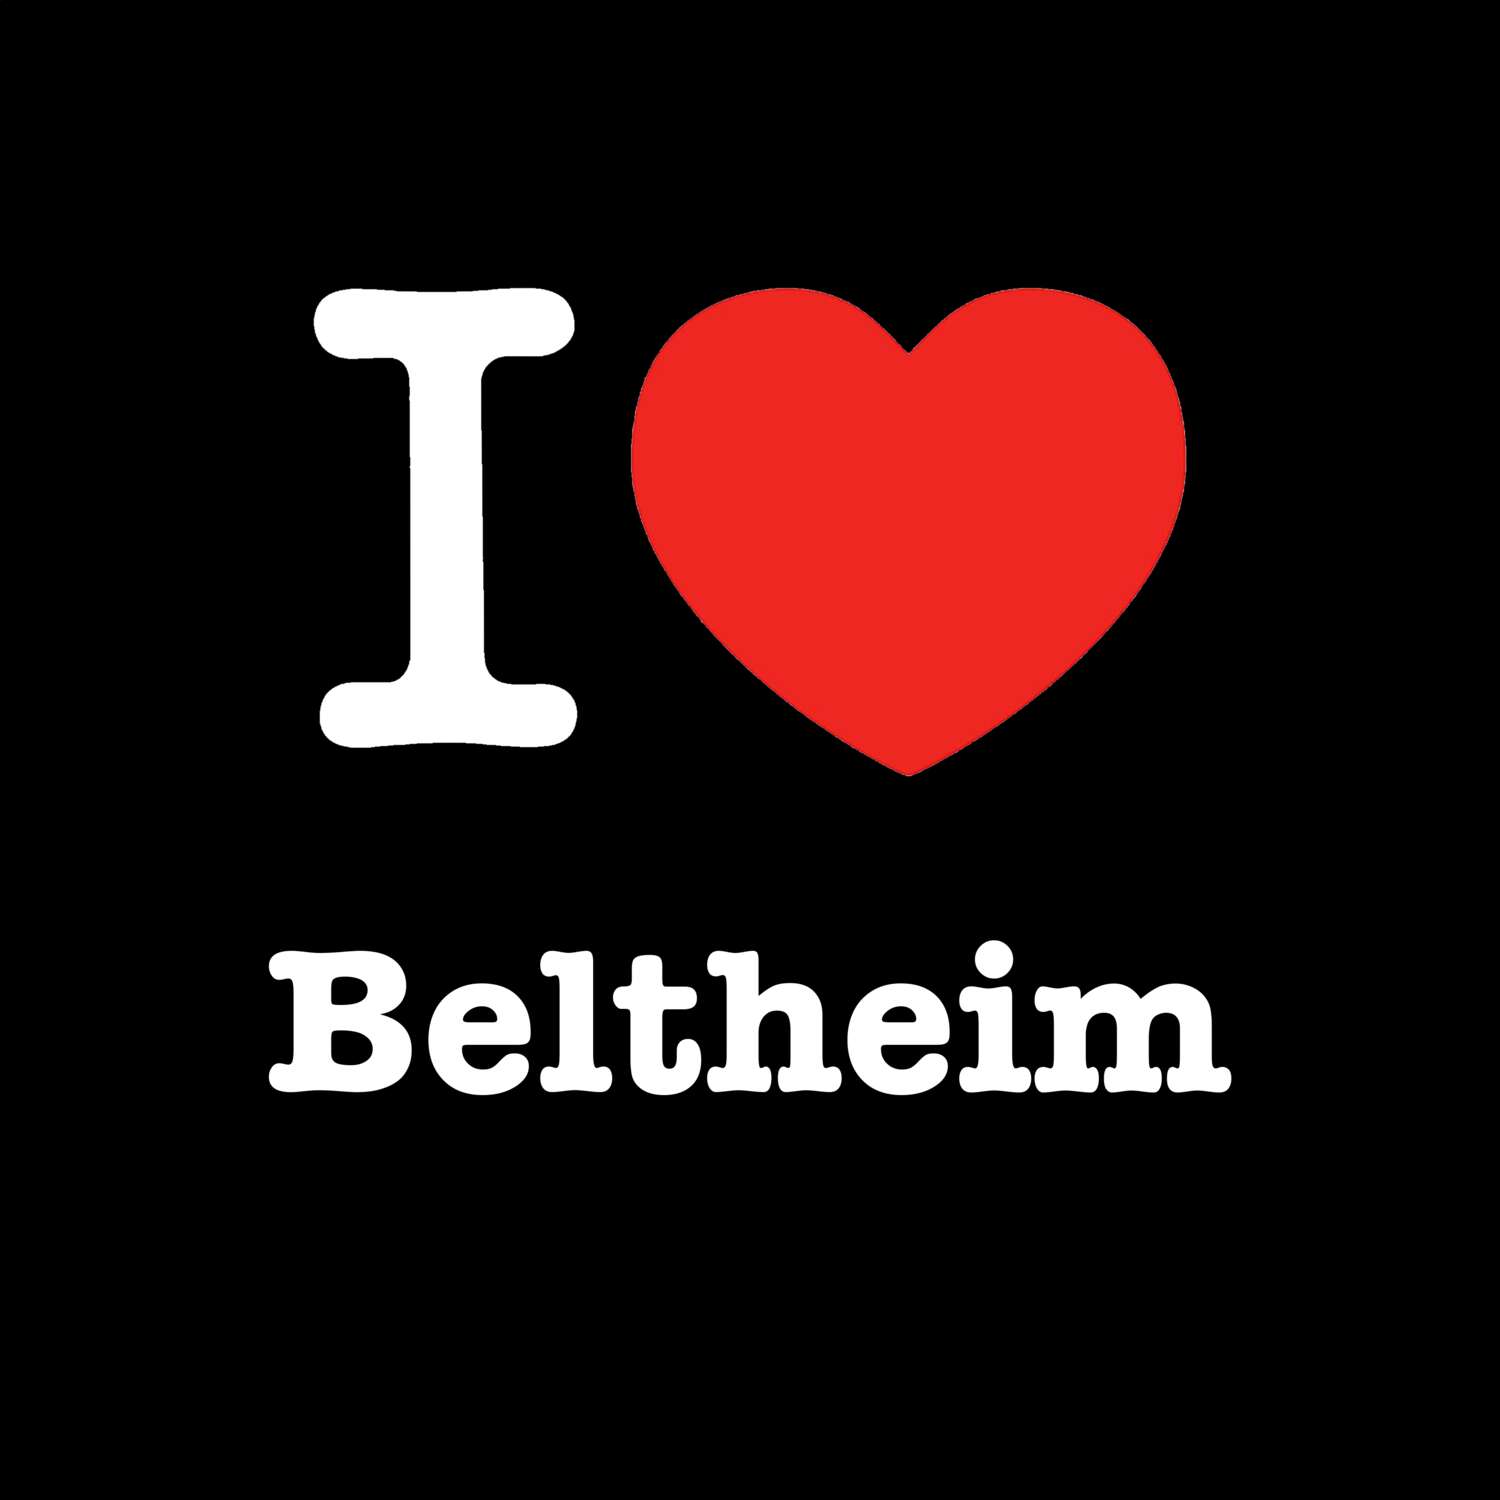 Beltheim T-Shirt »I love«